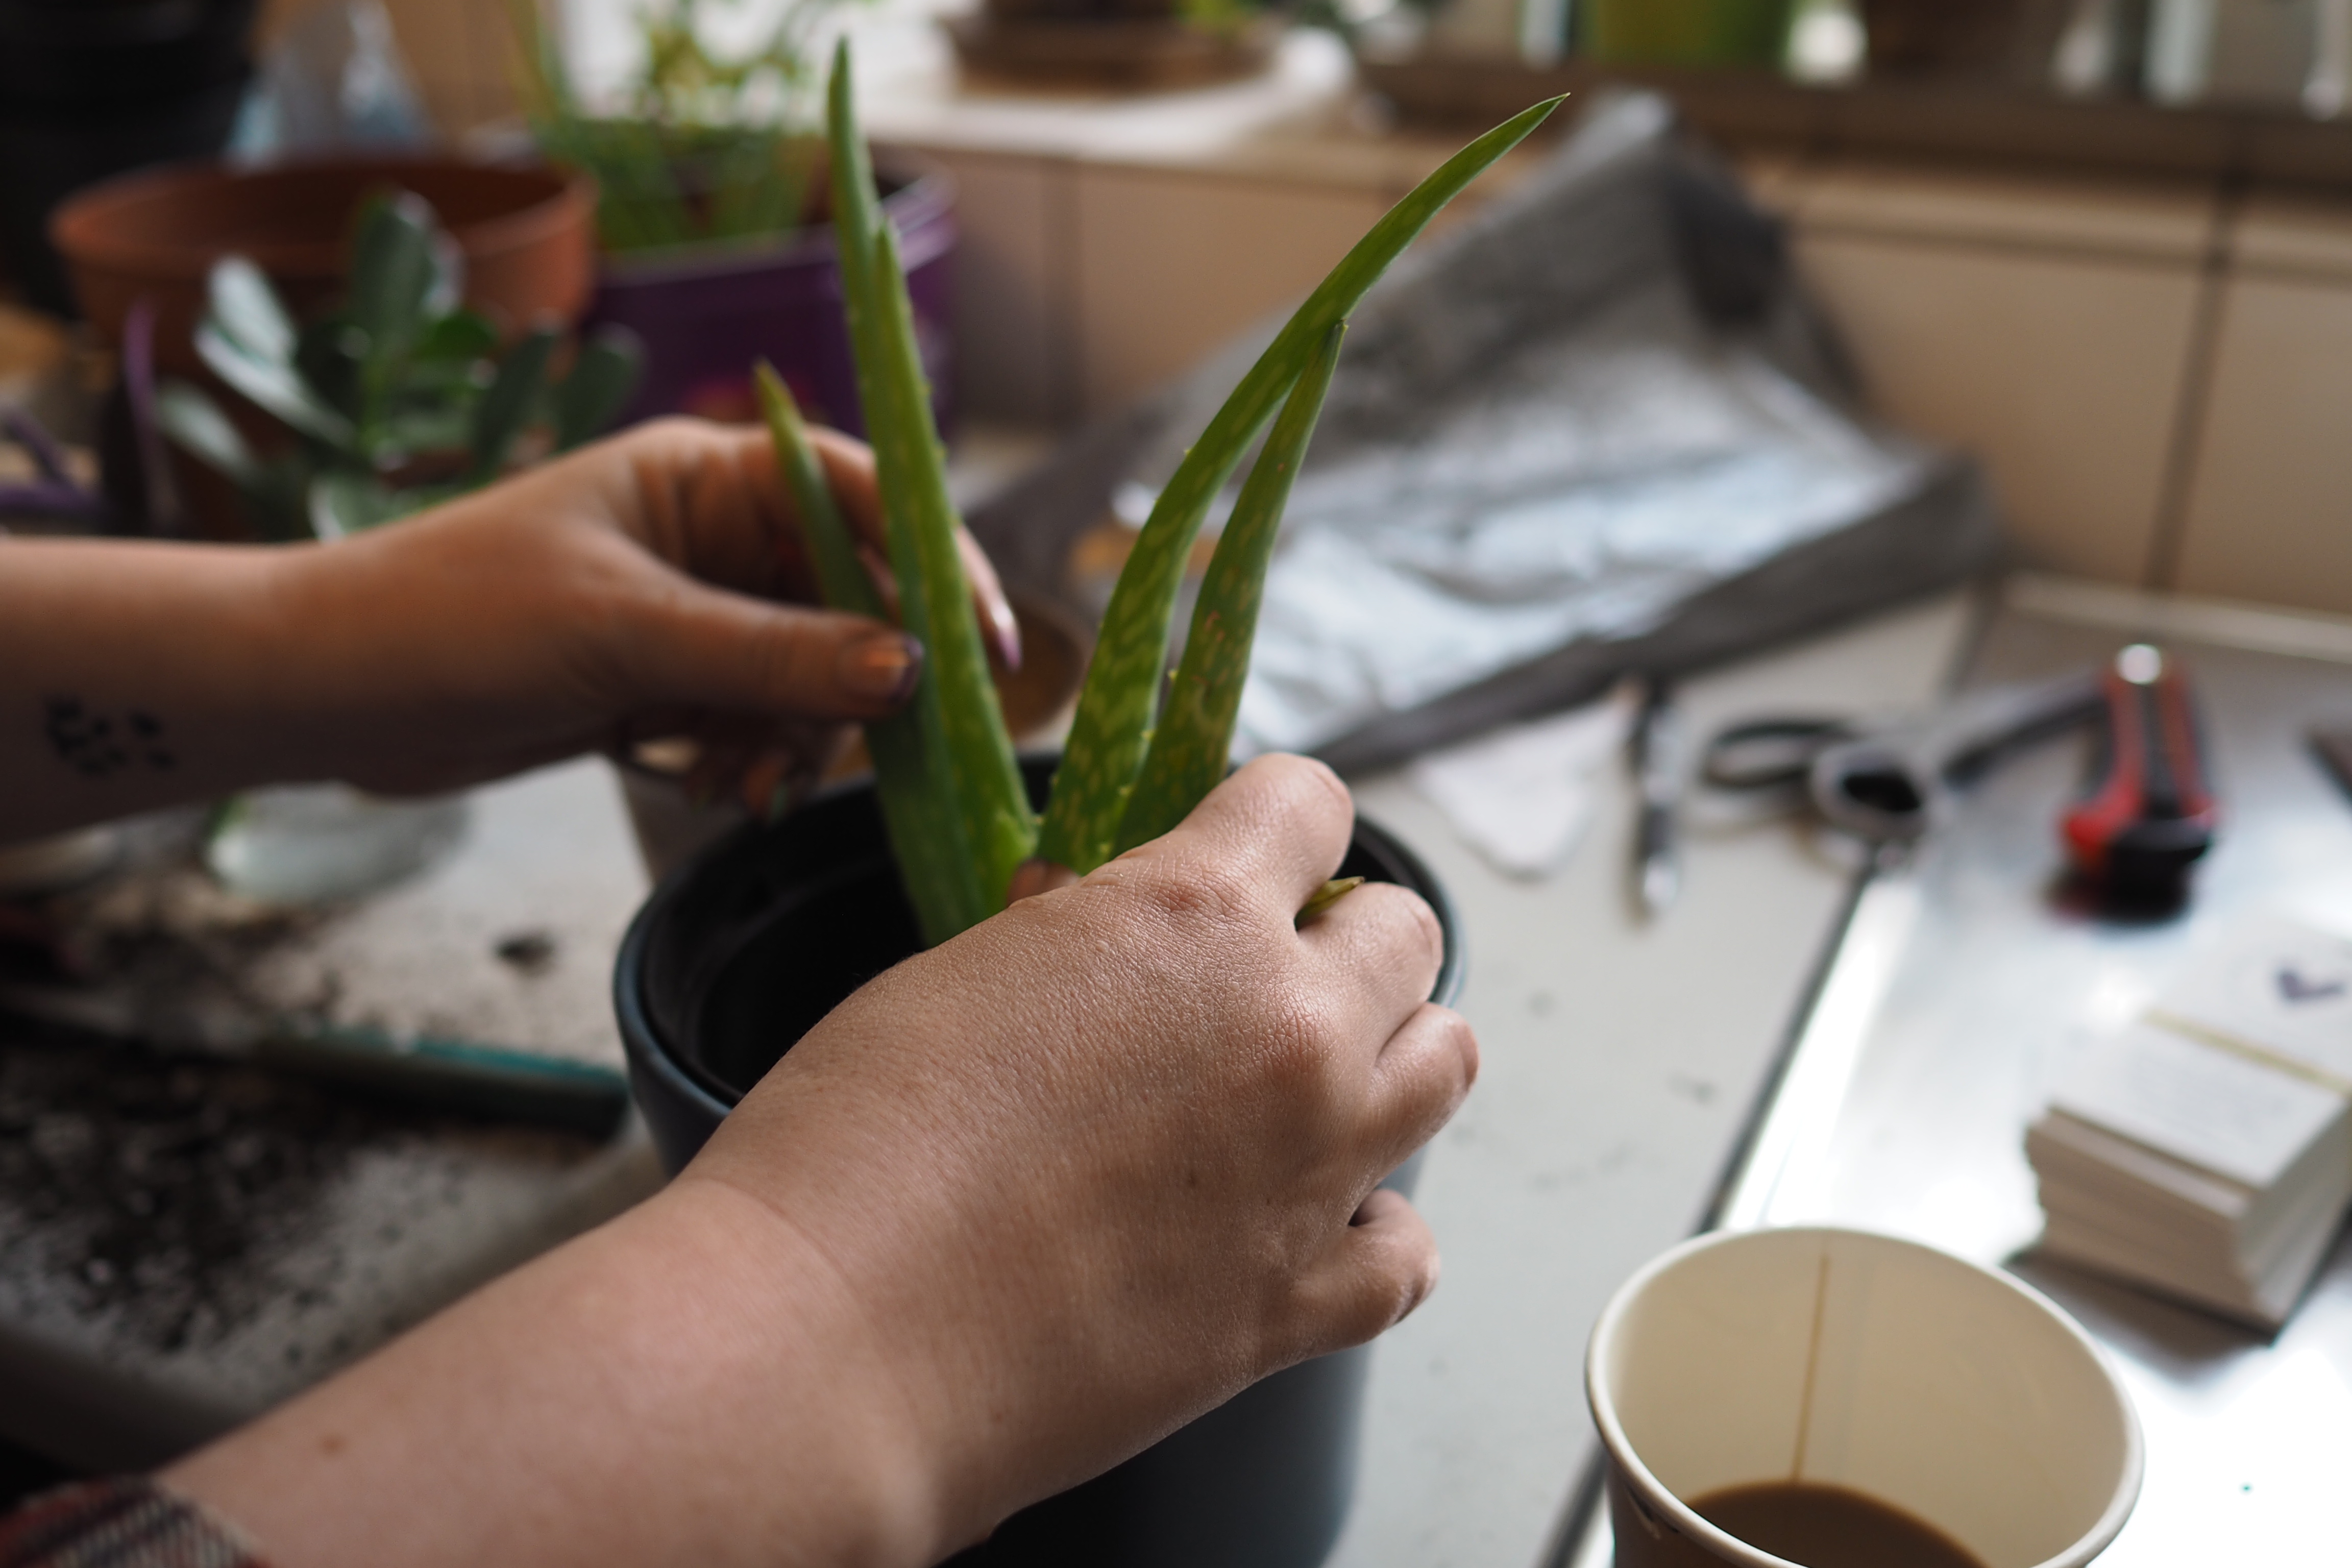 Billedet viser hænder, en aloe vera plante og en kop kaffe.